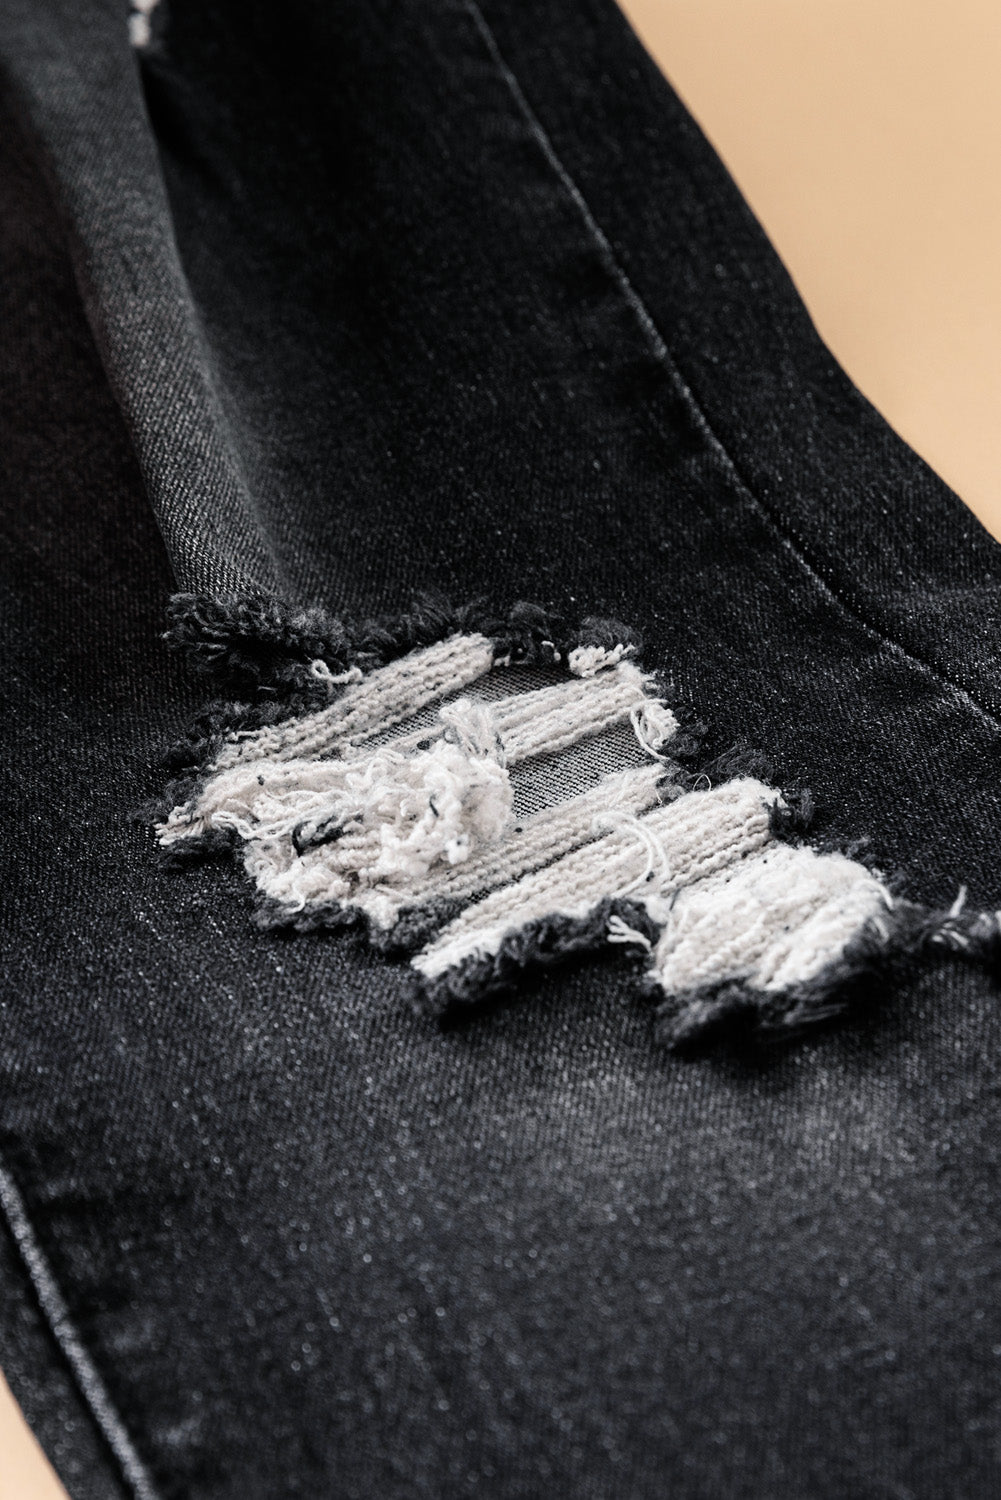 Black Distressed Raw Hem Button Mid Waist Jeans